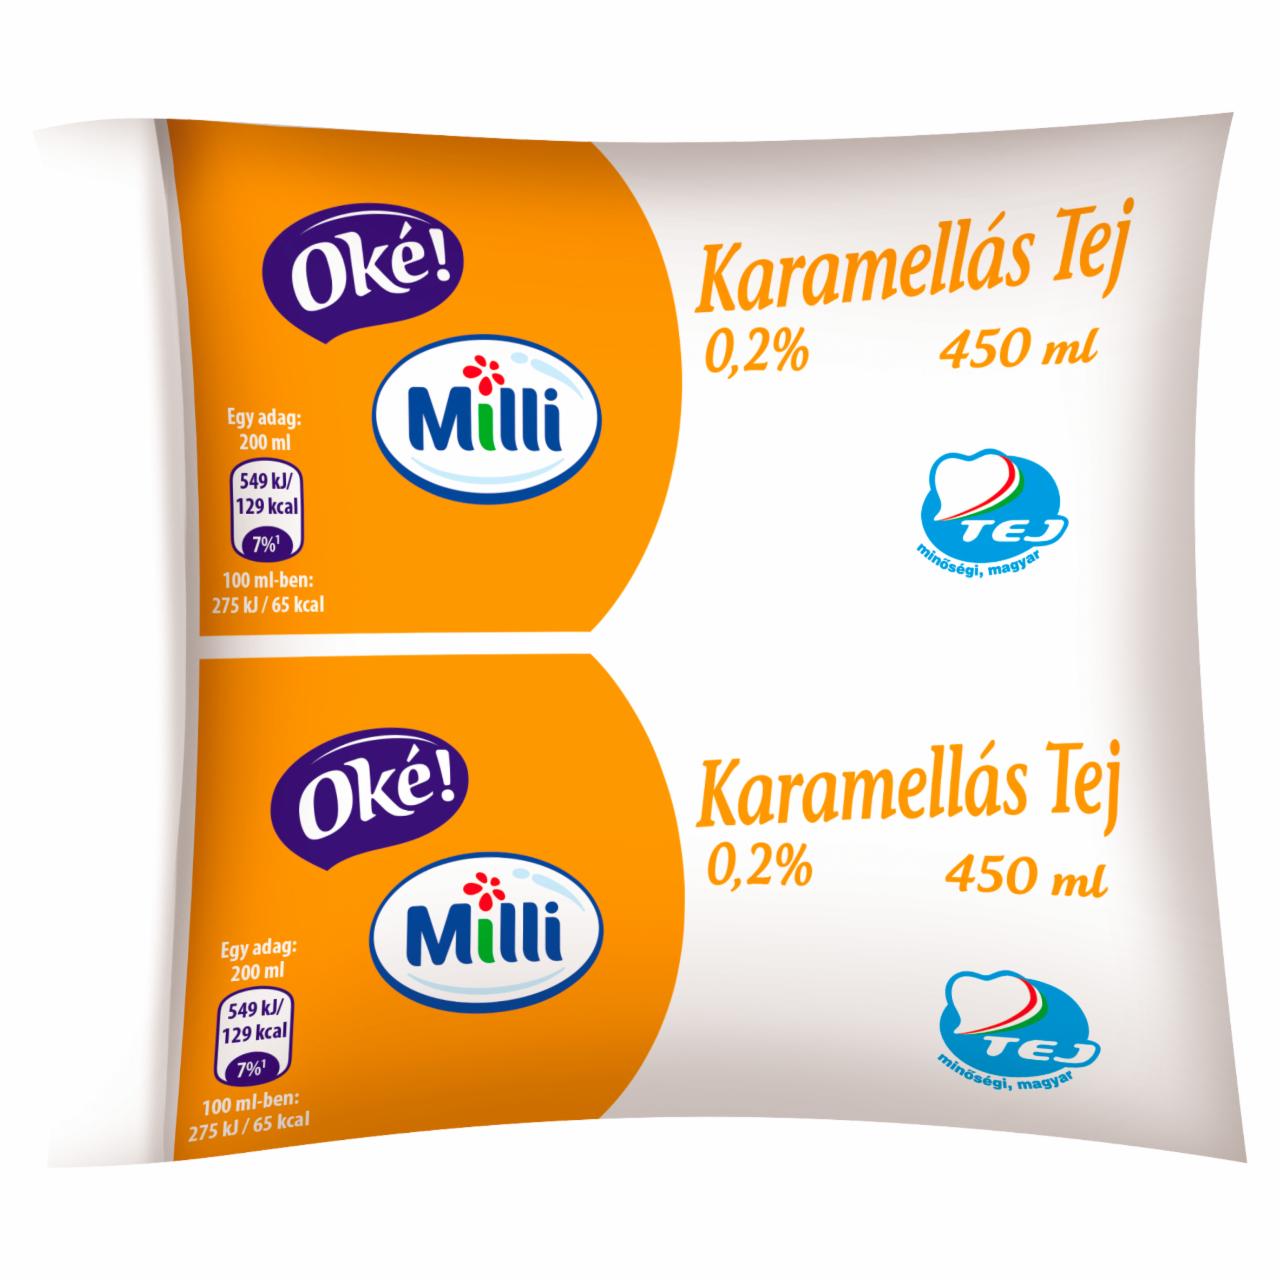 Képek - Milli Oké! UHT karamellás tej 450 ml